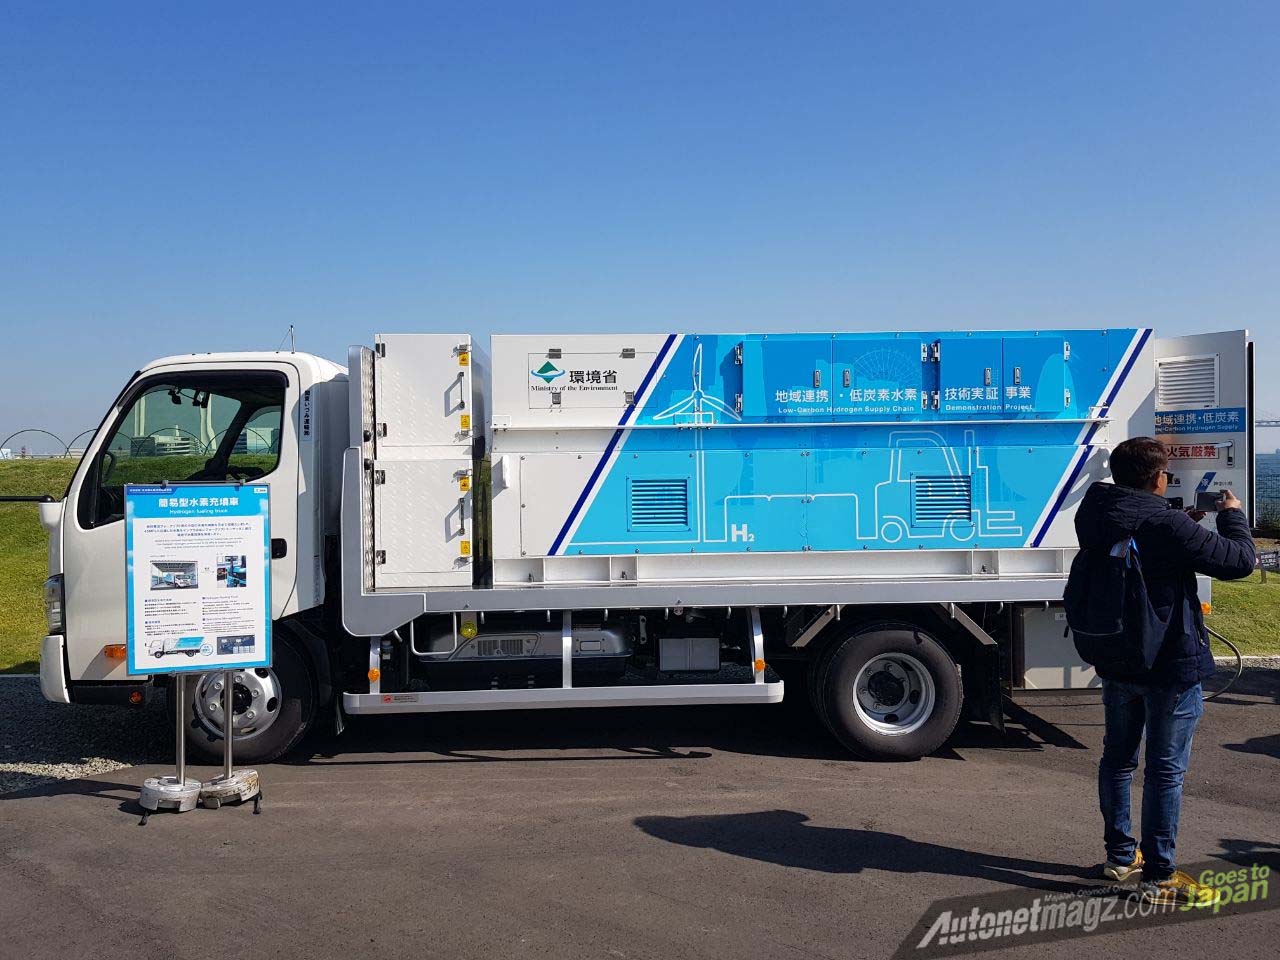 Berita, truk distribusi ekosistem hidrogen toyota: Toyota Membuat Ekosistem Hidrogen Ramah Lingkungan di Jepang